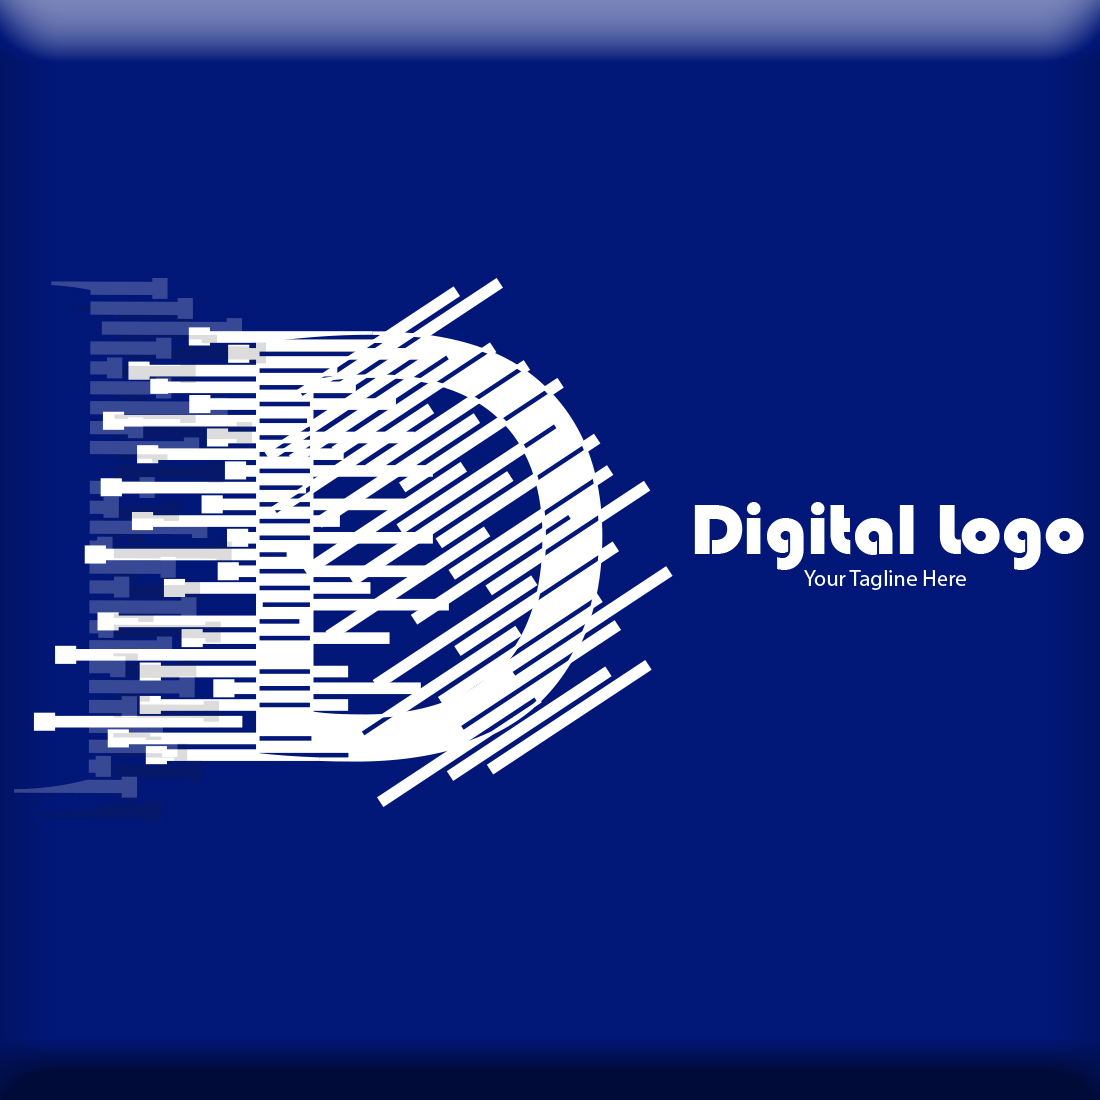 D Letter Digital Logo preview image.